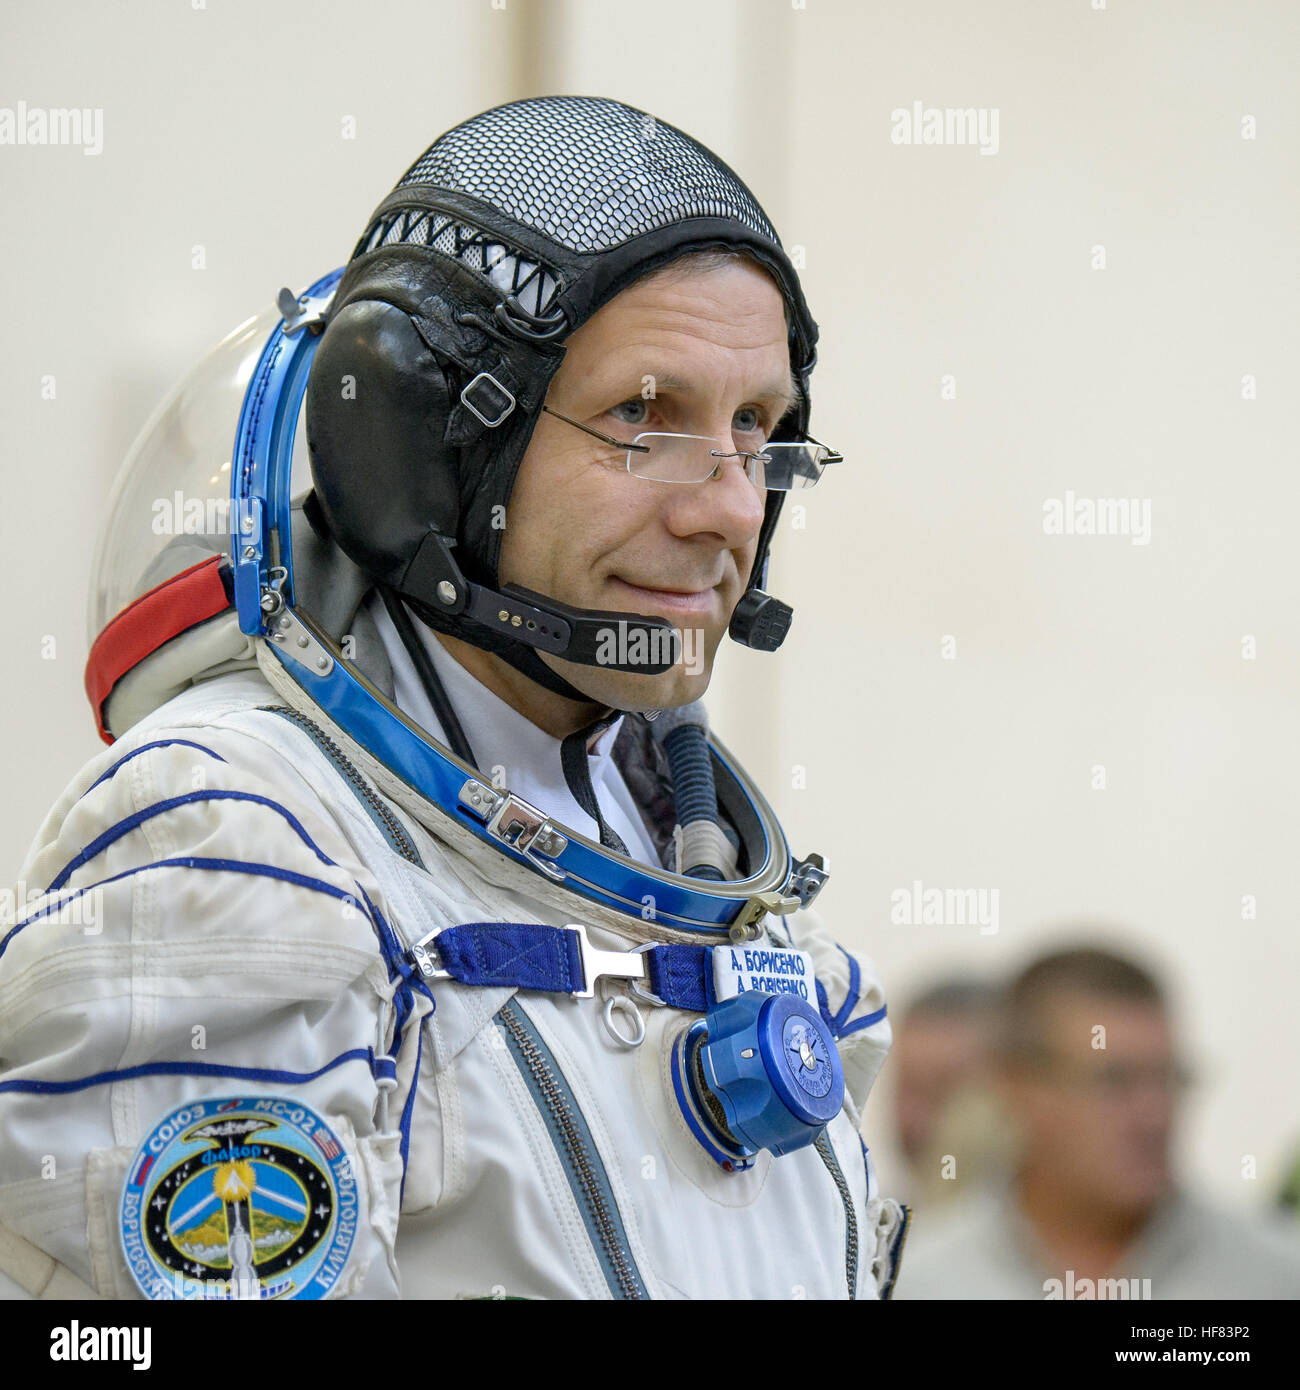 Expedition 49 russischen Kosmonauten Andrey Borisenko von Roskosmos ist während der Sojus-Qualifikation-Prüfungen, Mittwoch, 31. August 2016, die Gagarin Kosmonauten Training Center (GCTC) in Star City, Russland gesehen. Stockfoto